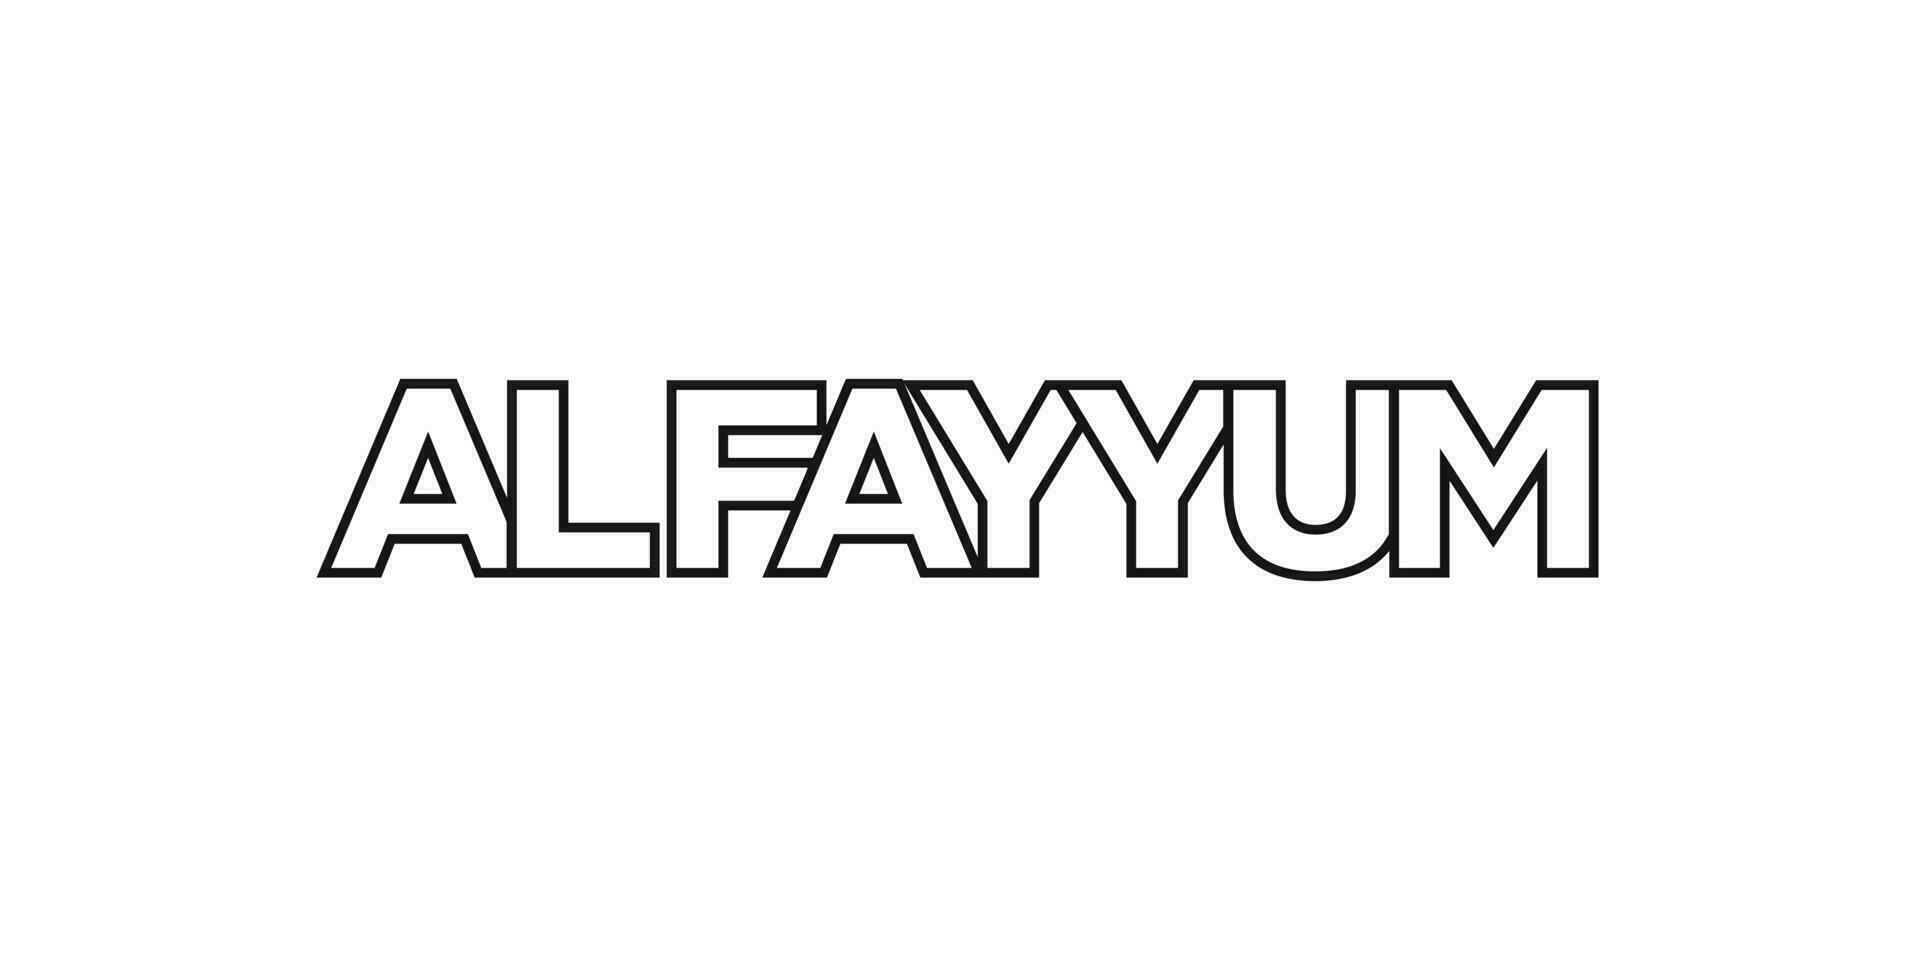 Al fayoum dans le Egypte emblème. le conception Caractéristiques une géométrique style, vecteur illustration avec audacieux typographie dans une moderne Police de caractère. le graphique slogan caractères.